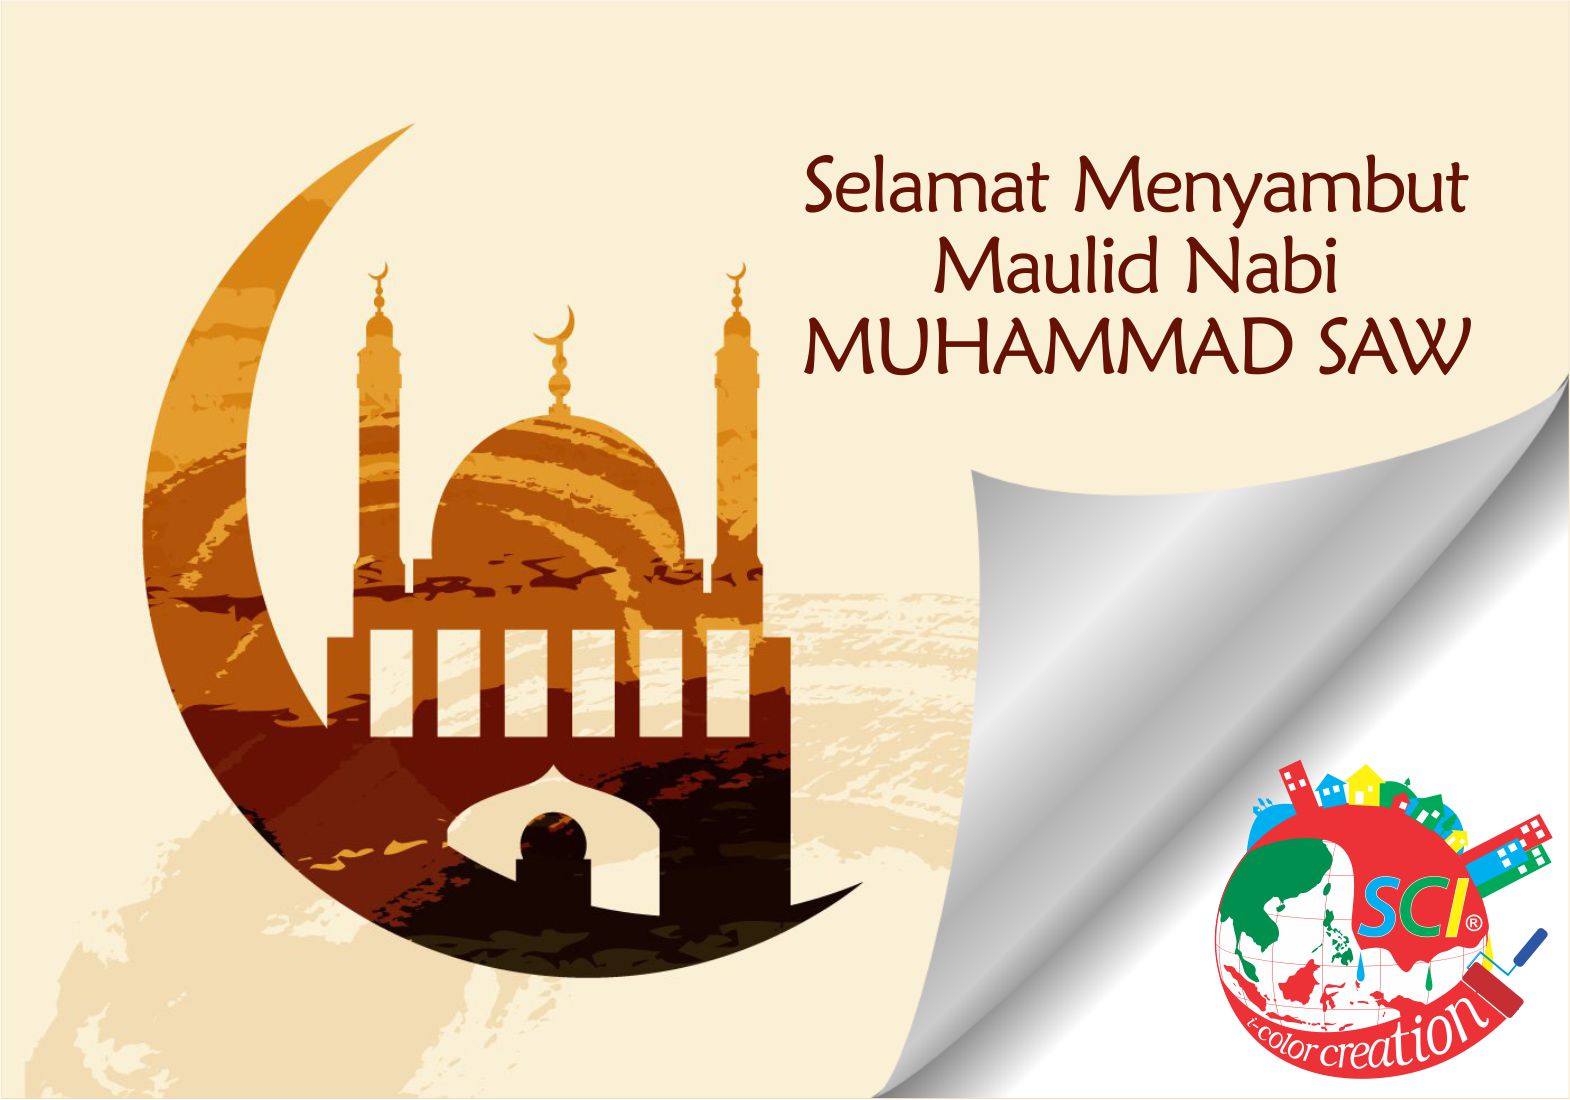 Selamat Menyambut Maulid Nabi Muhammad SAW - 2016  SCI Pusat